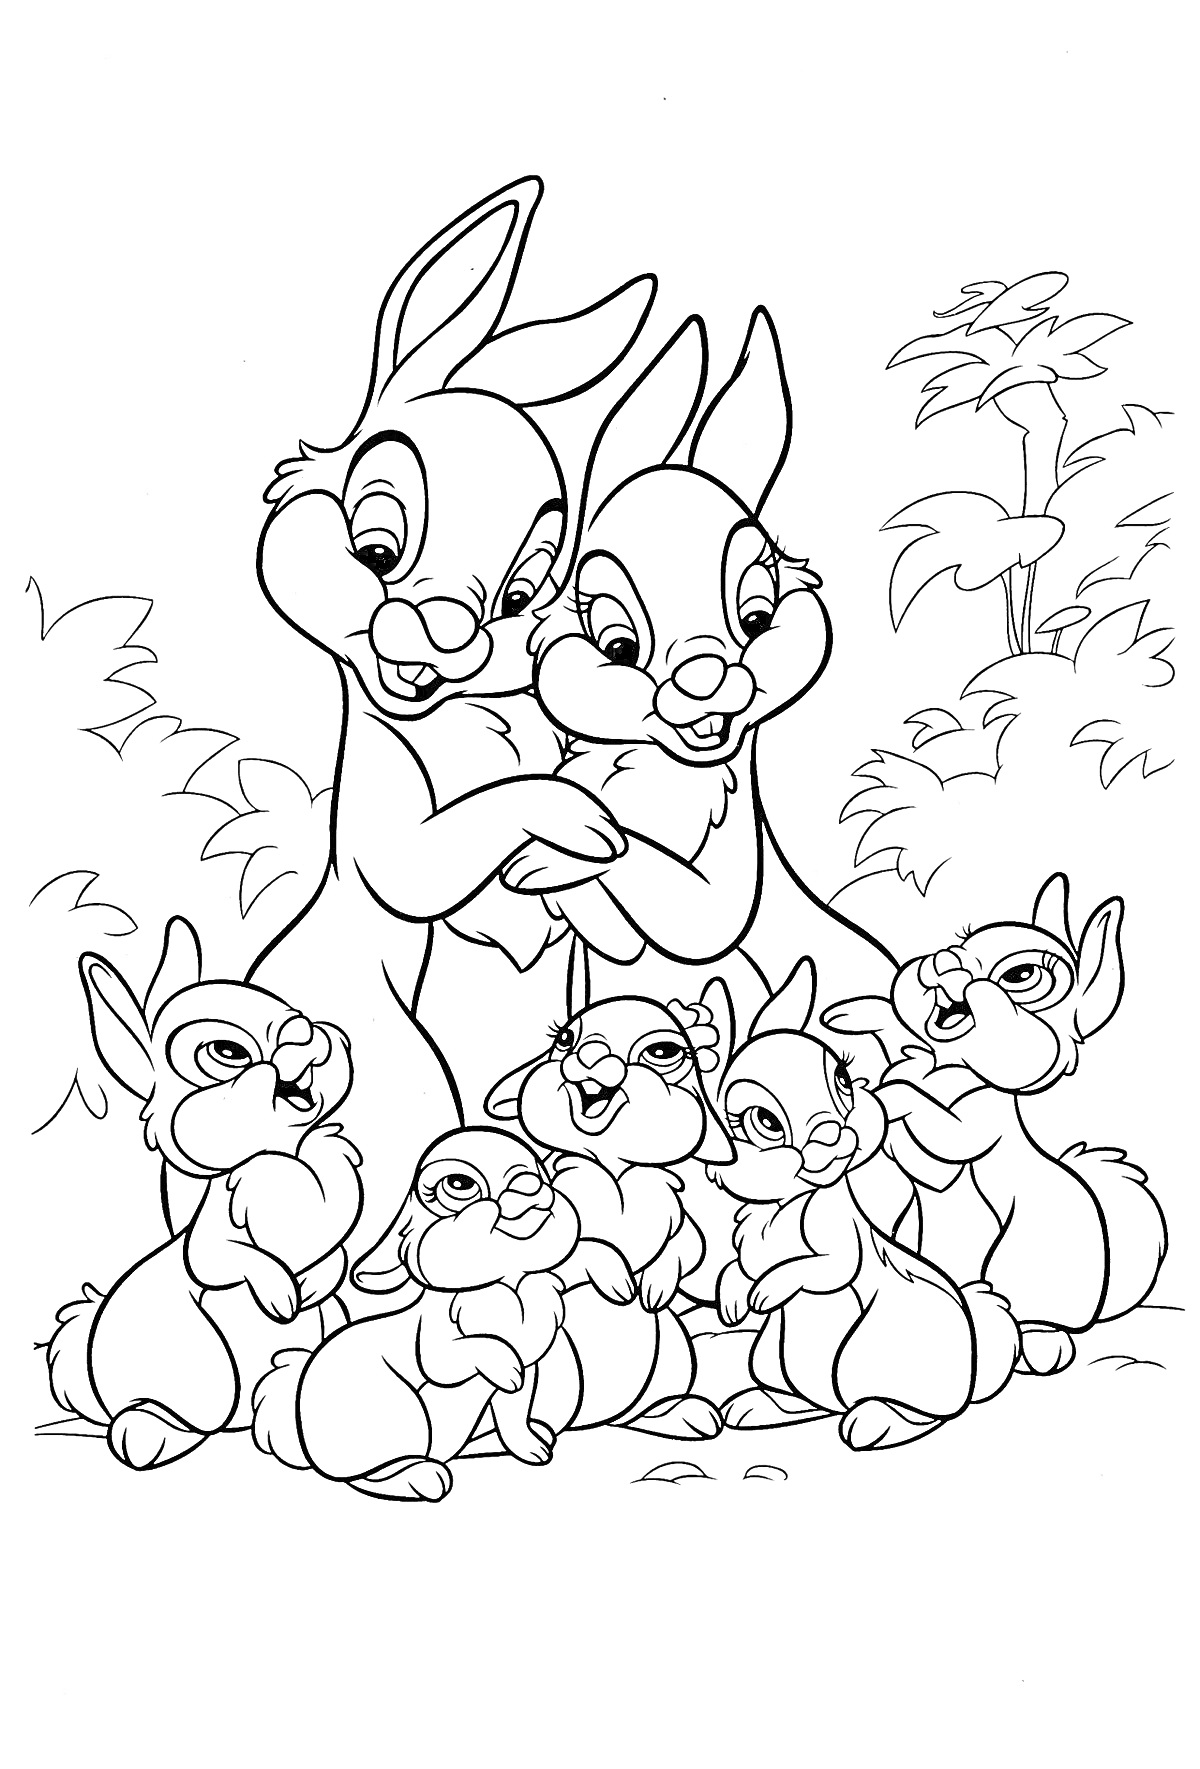 Раскраска Две взрослые кролики обнимаются, окружённые шестью маленькими крольчатами на фоне кустов и деревьев.